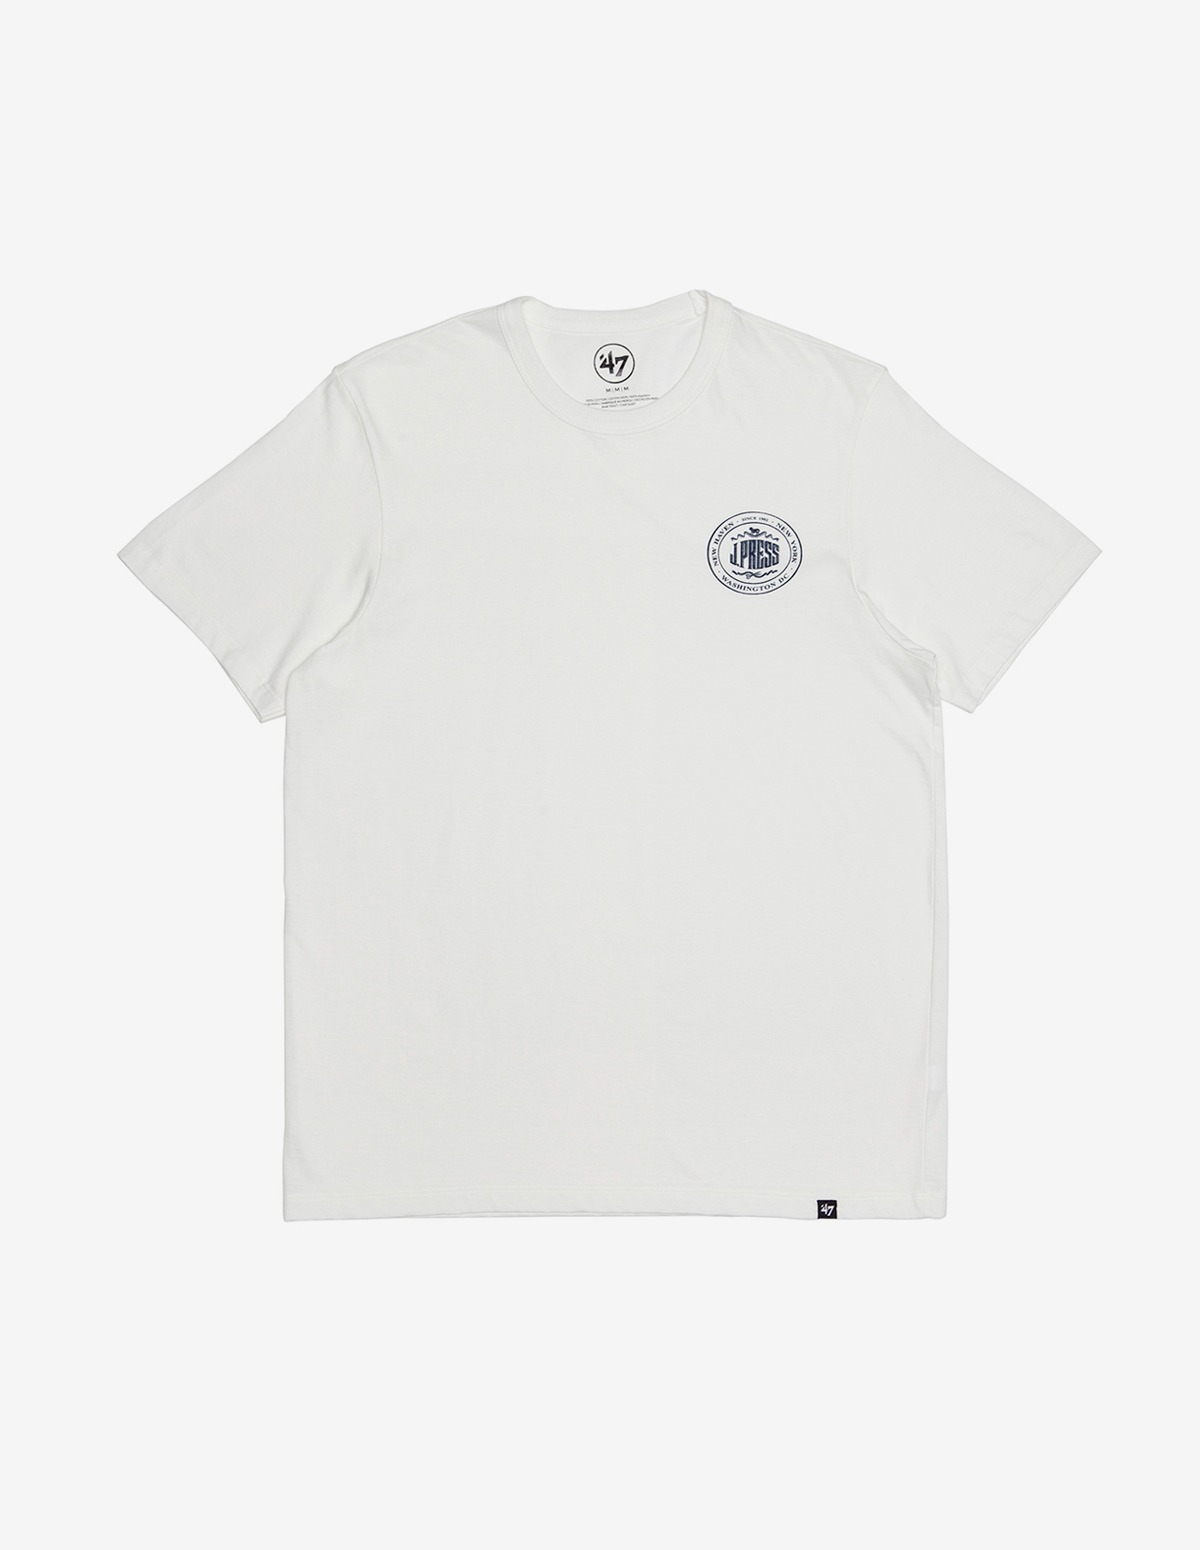 J.Press Short Sleeve T-Shirt White